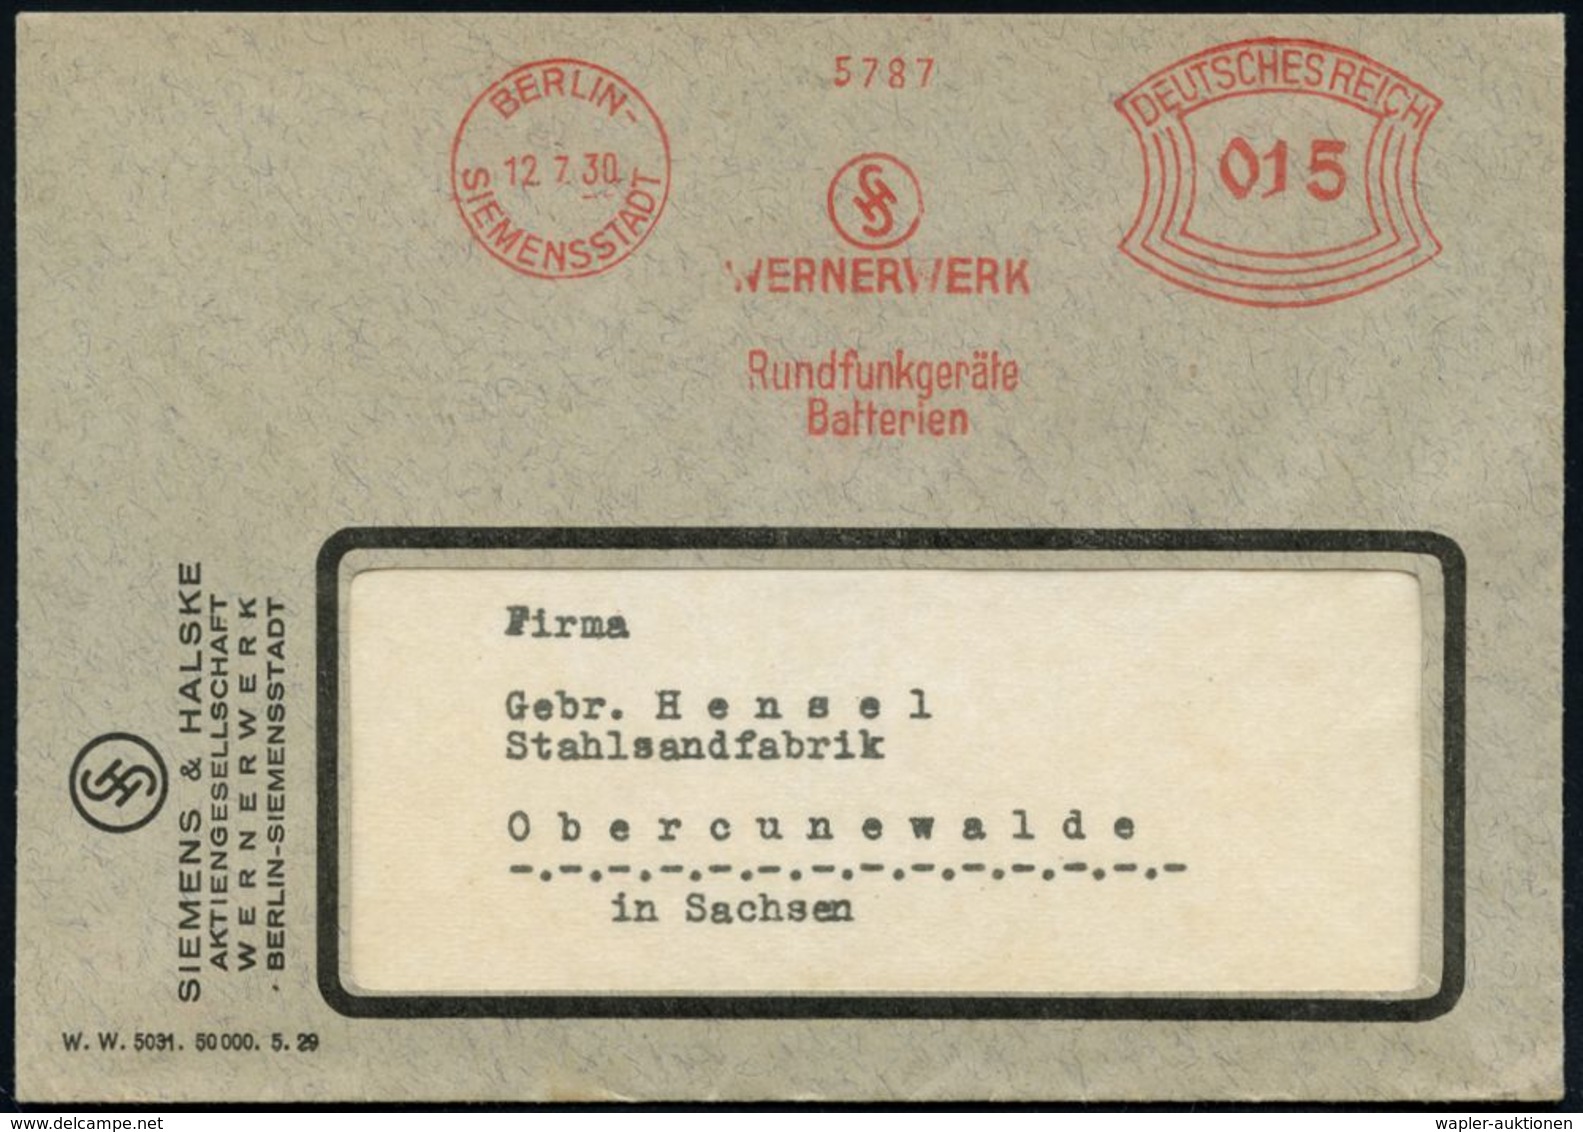 RADIO & RADIO-INDUSTRIE / APPARATE : BERLIN-/ SIEMENSSTADT/ WERNERWERK/ Rundfunkgeräte/ Batterien 1930 (12.7.) AFS (Mono - Non Classés